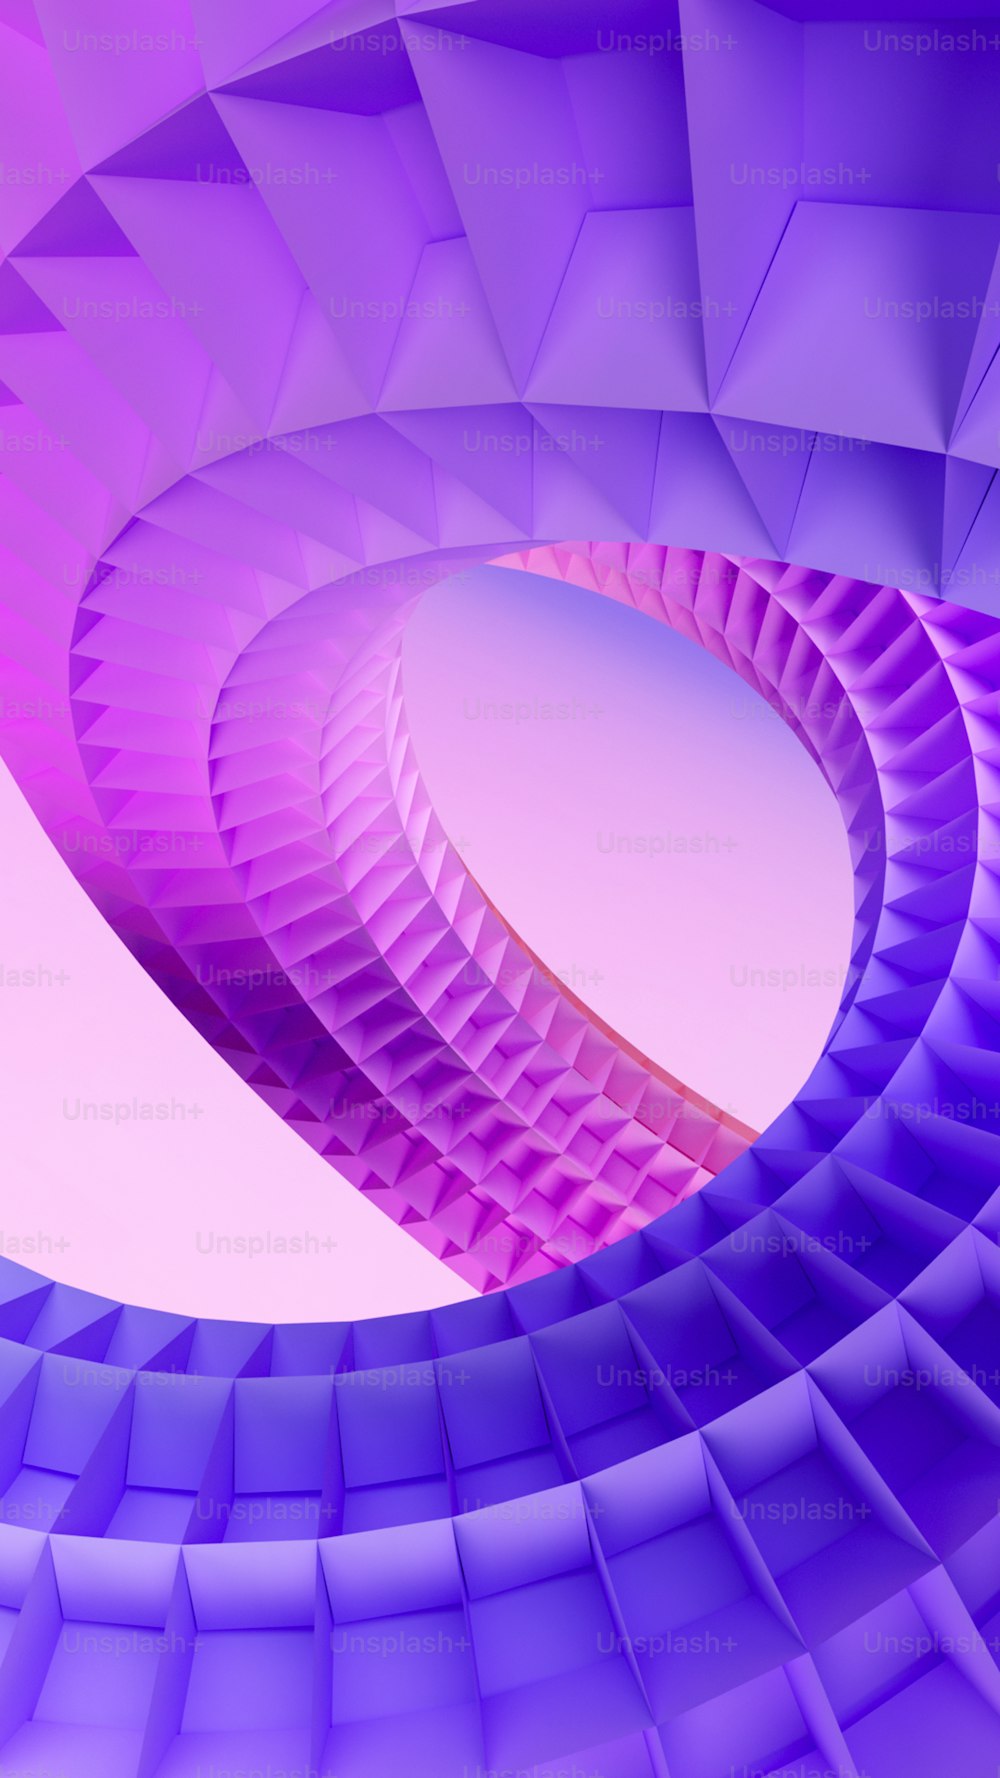 un'immagine astratta di una struttura a forma di spirale